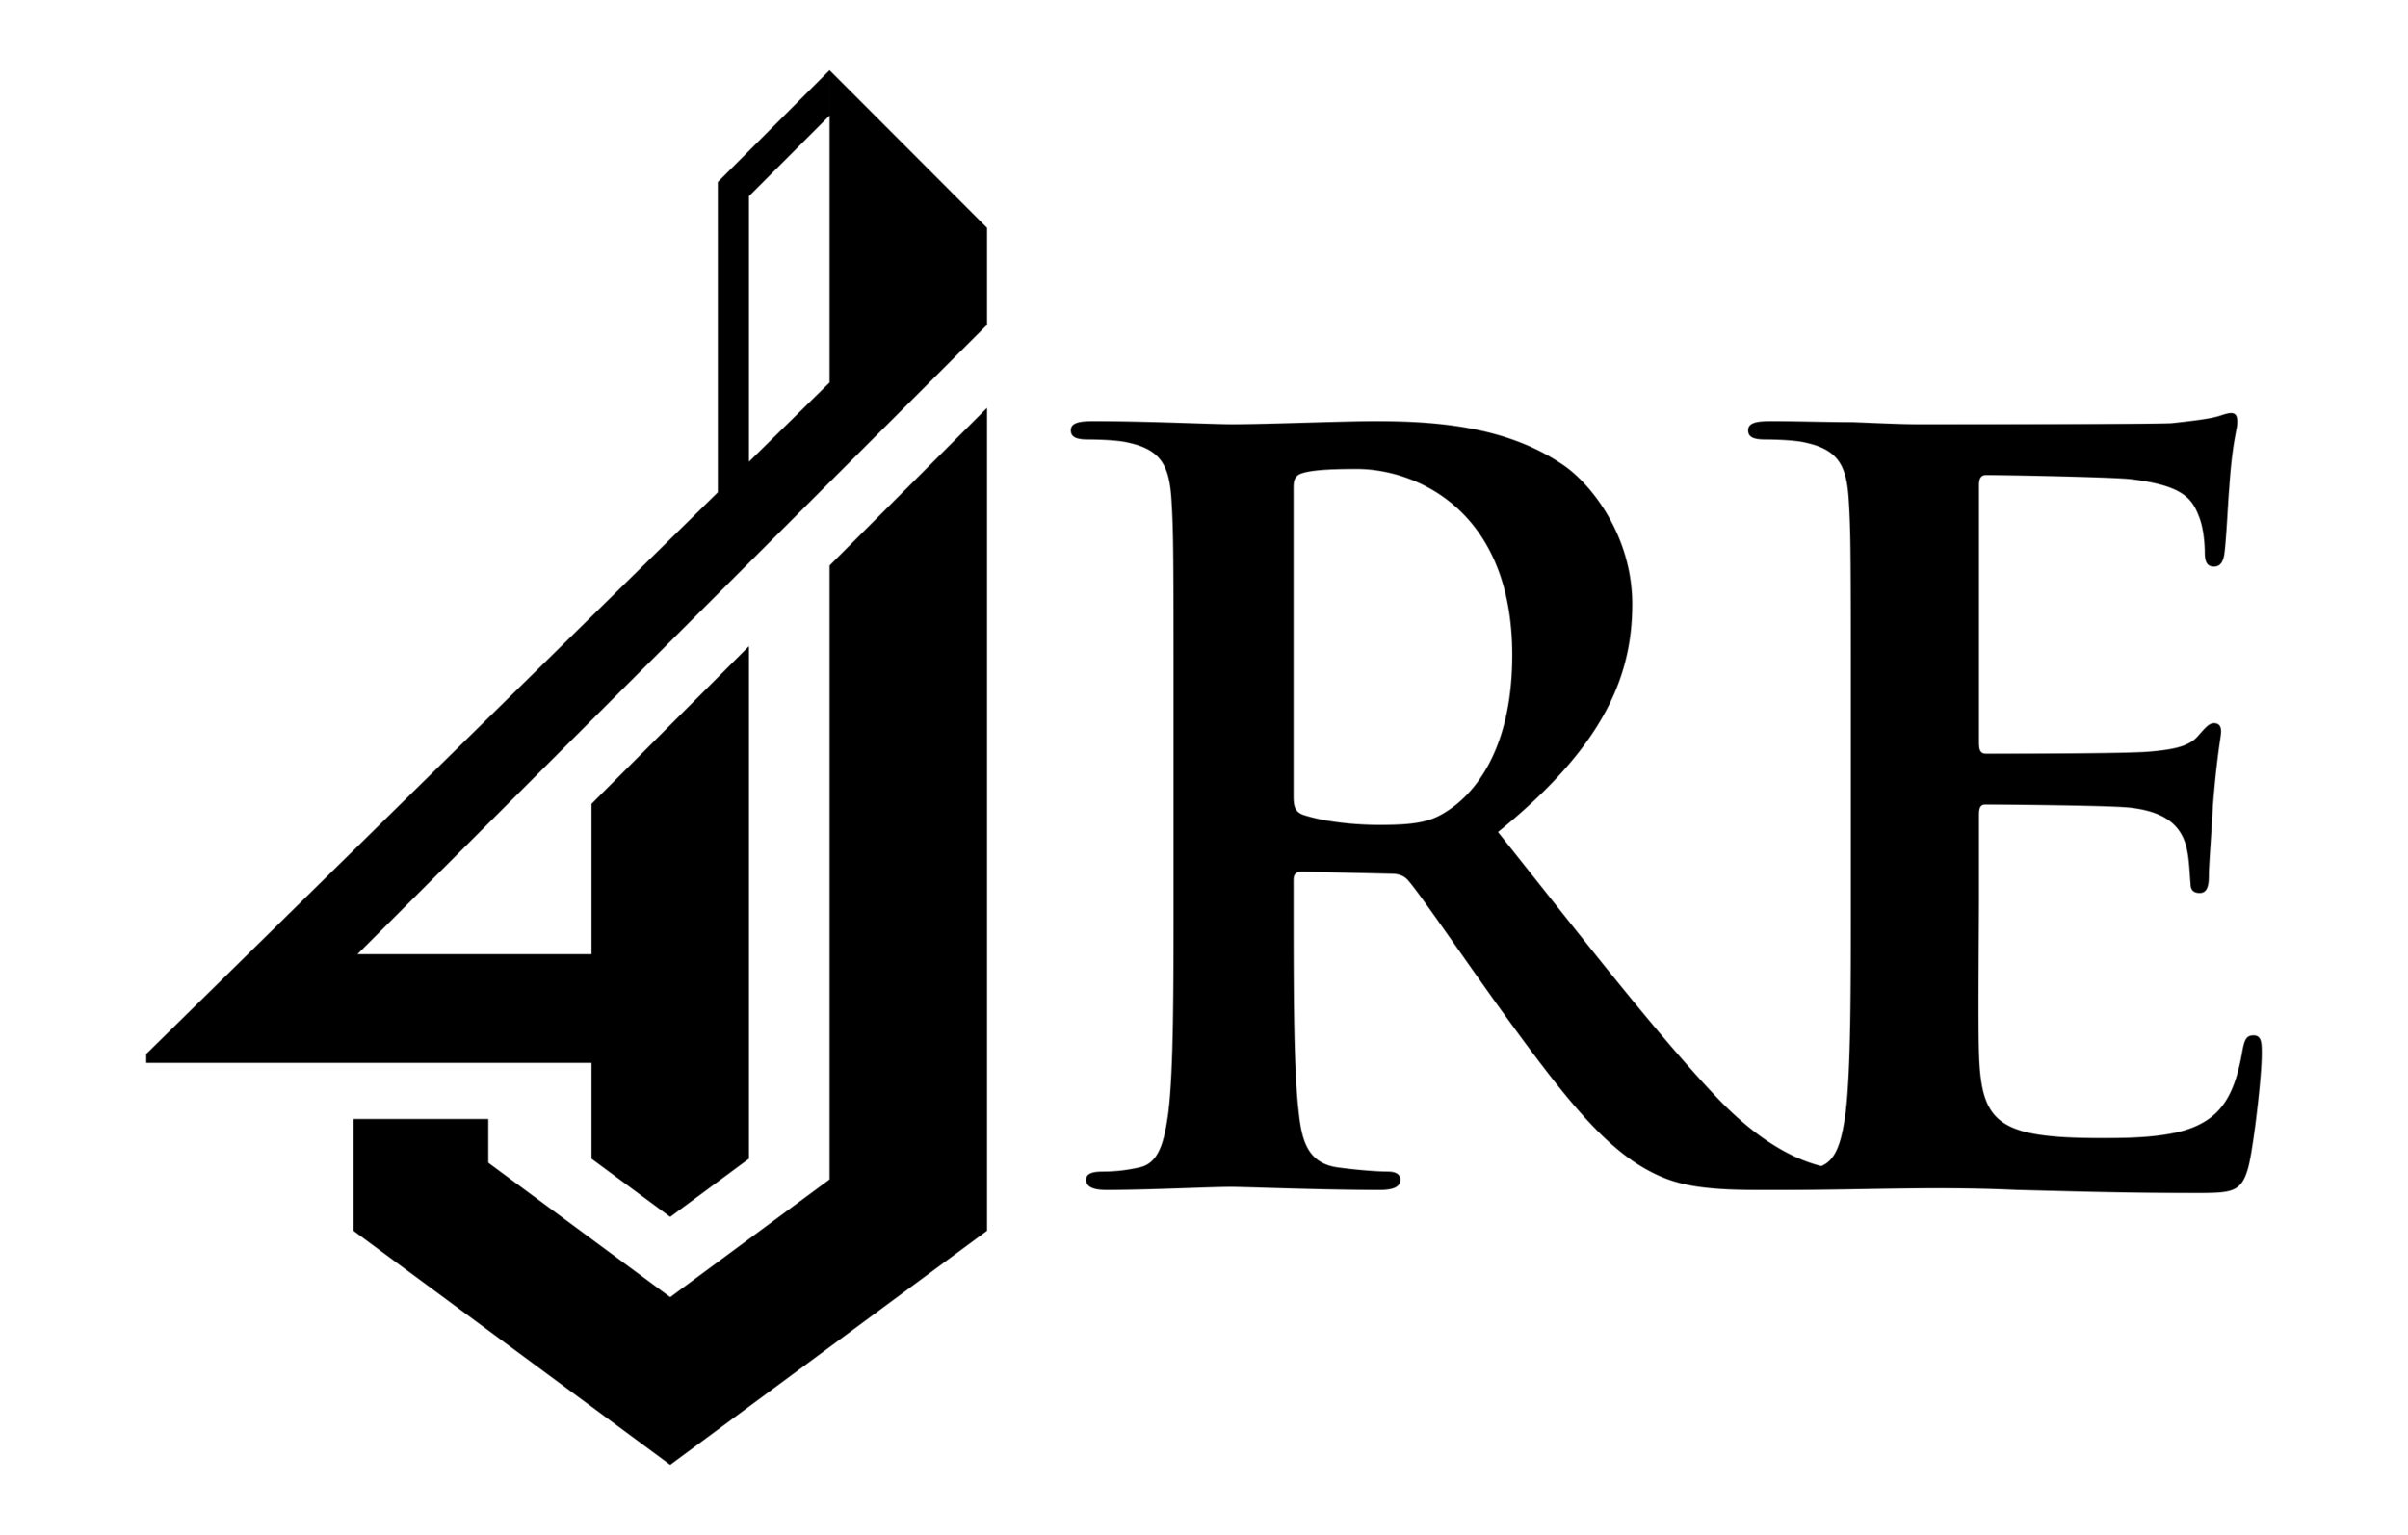 4JRE Logo-Black-File PNG copy.png